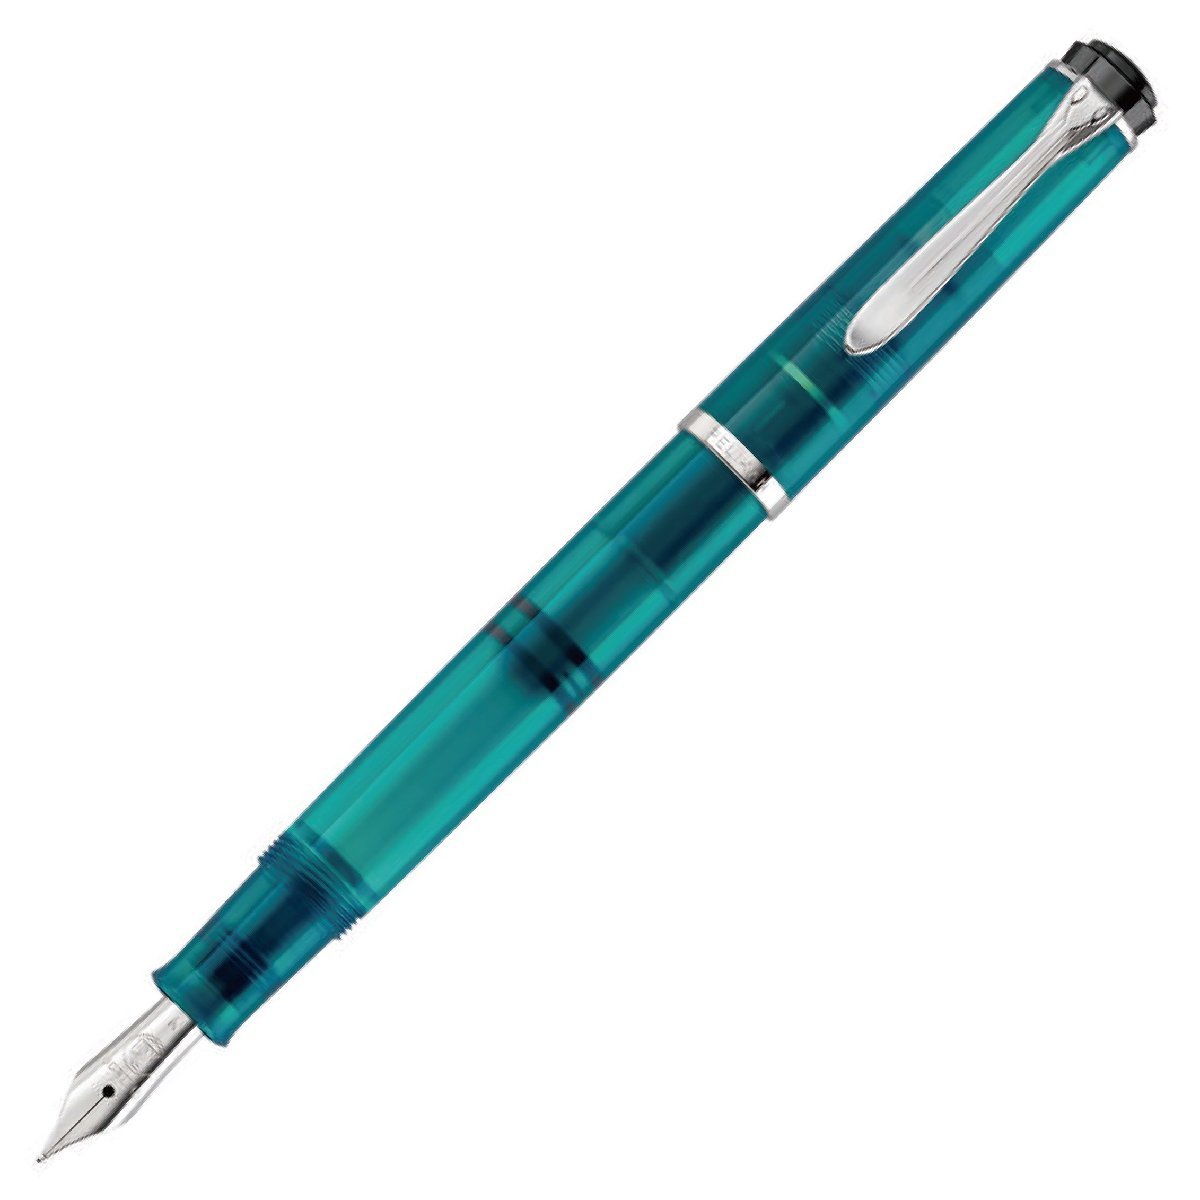 最適な価格 PELIKAN ペリカン クラシック M205 アパタイト 万年筆 (EF 極細) 万年筆一般